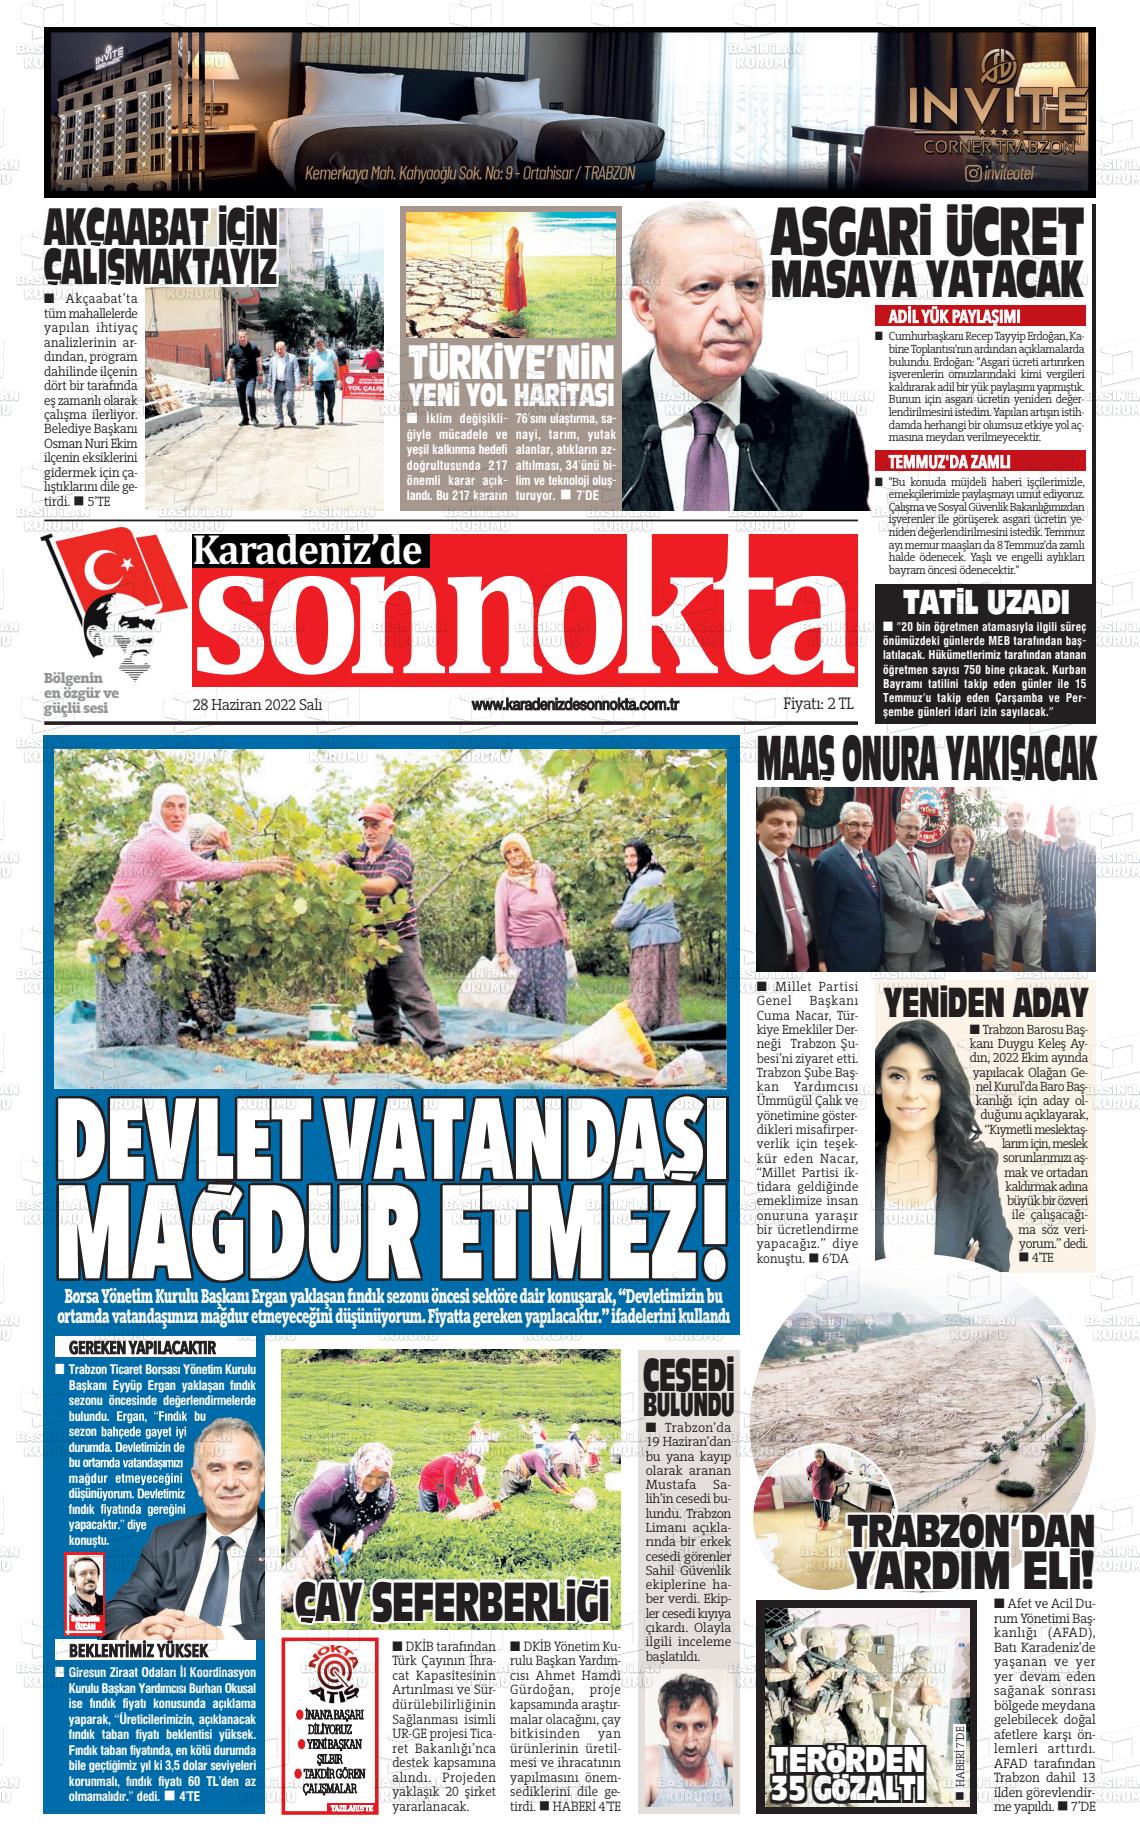 28 Haziran 2022 Karadeniz'de Sonnokta Gazete Manşeti